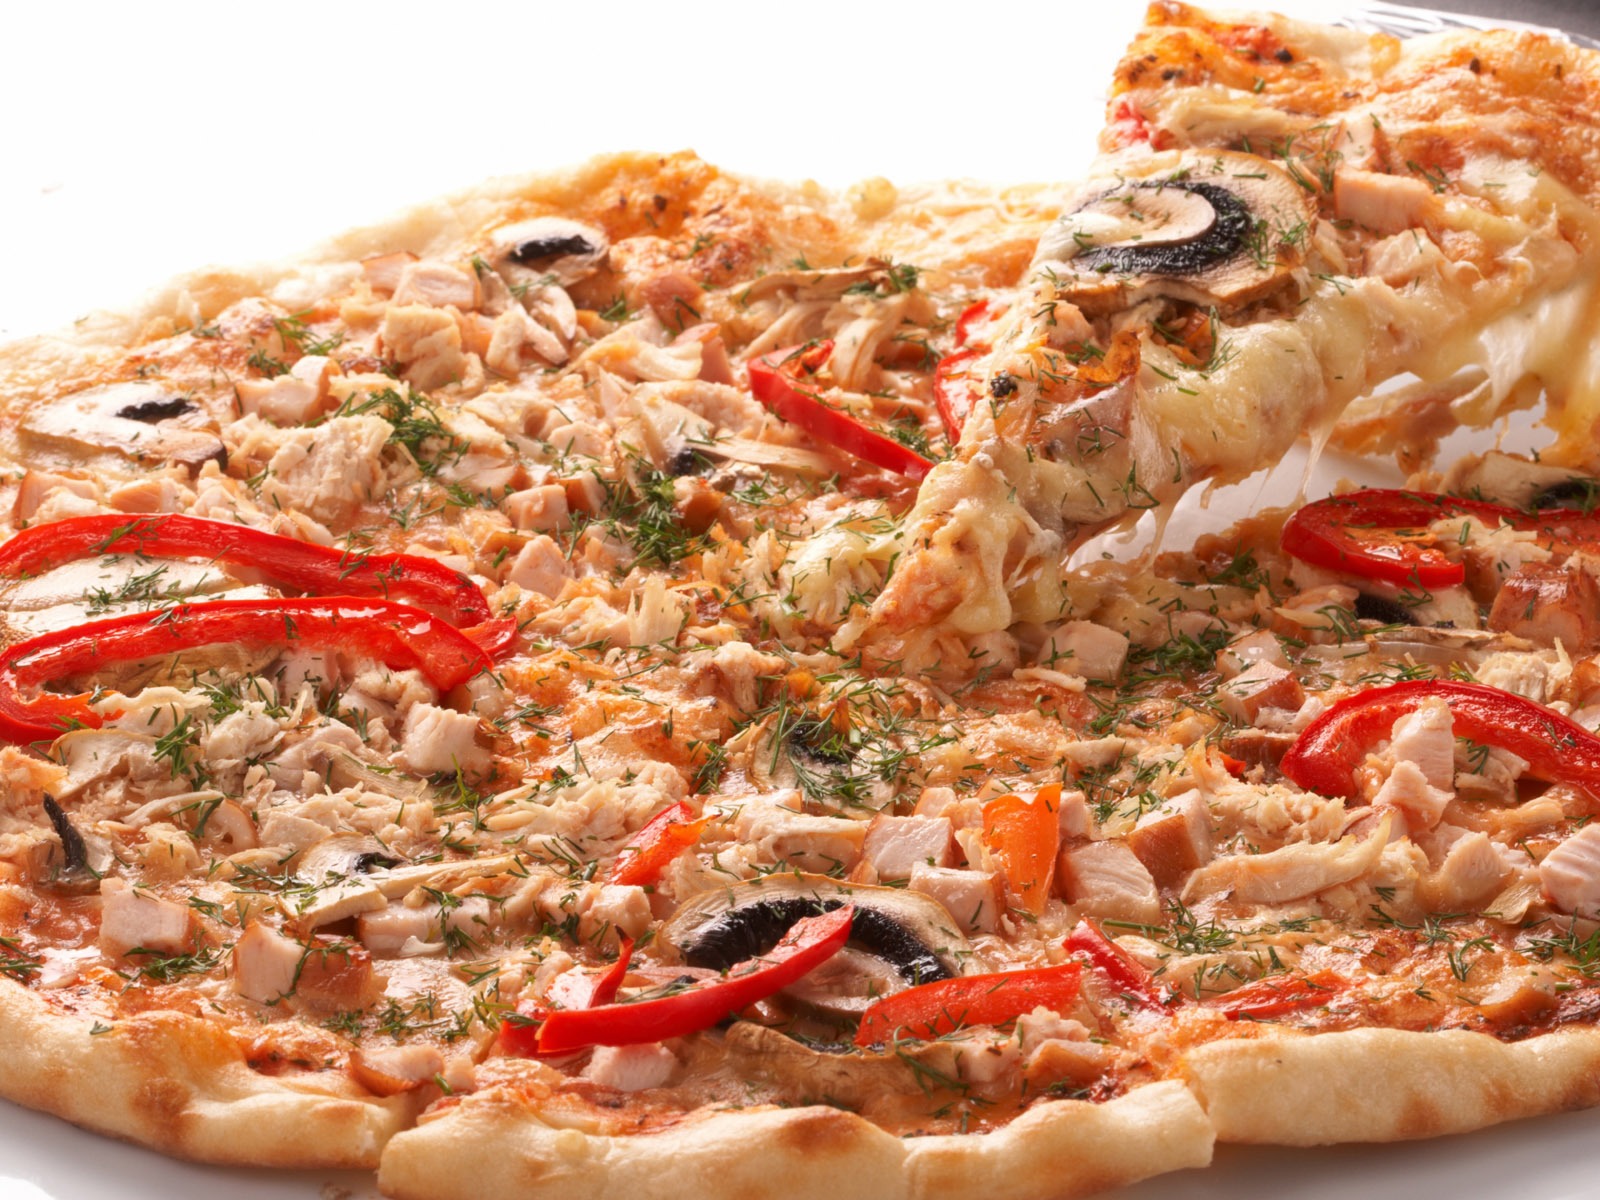 Fondos de pizzerías de Alimentos (4) #6 - 1600x1200